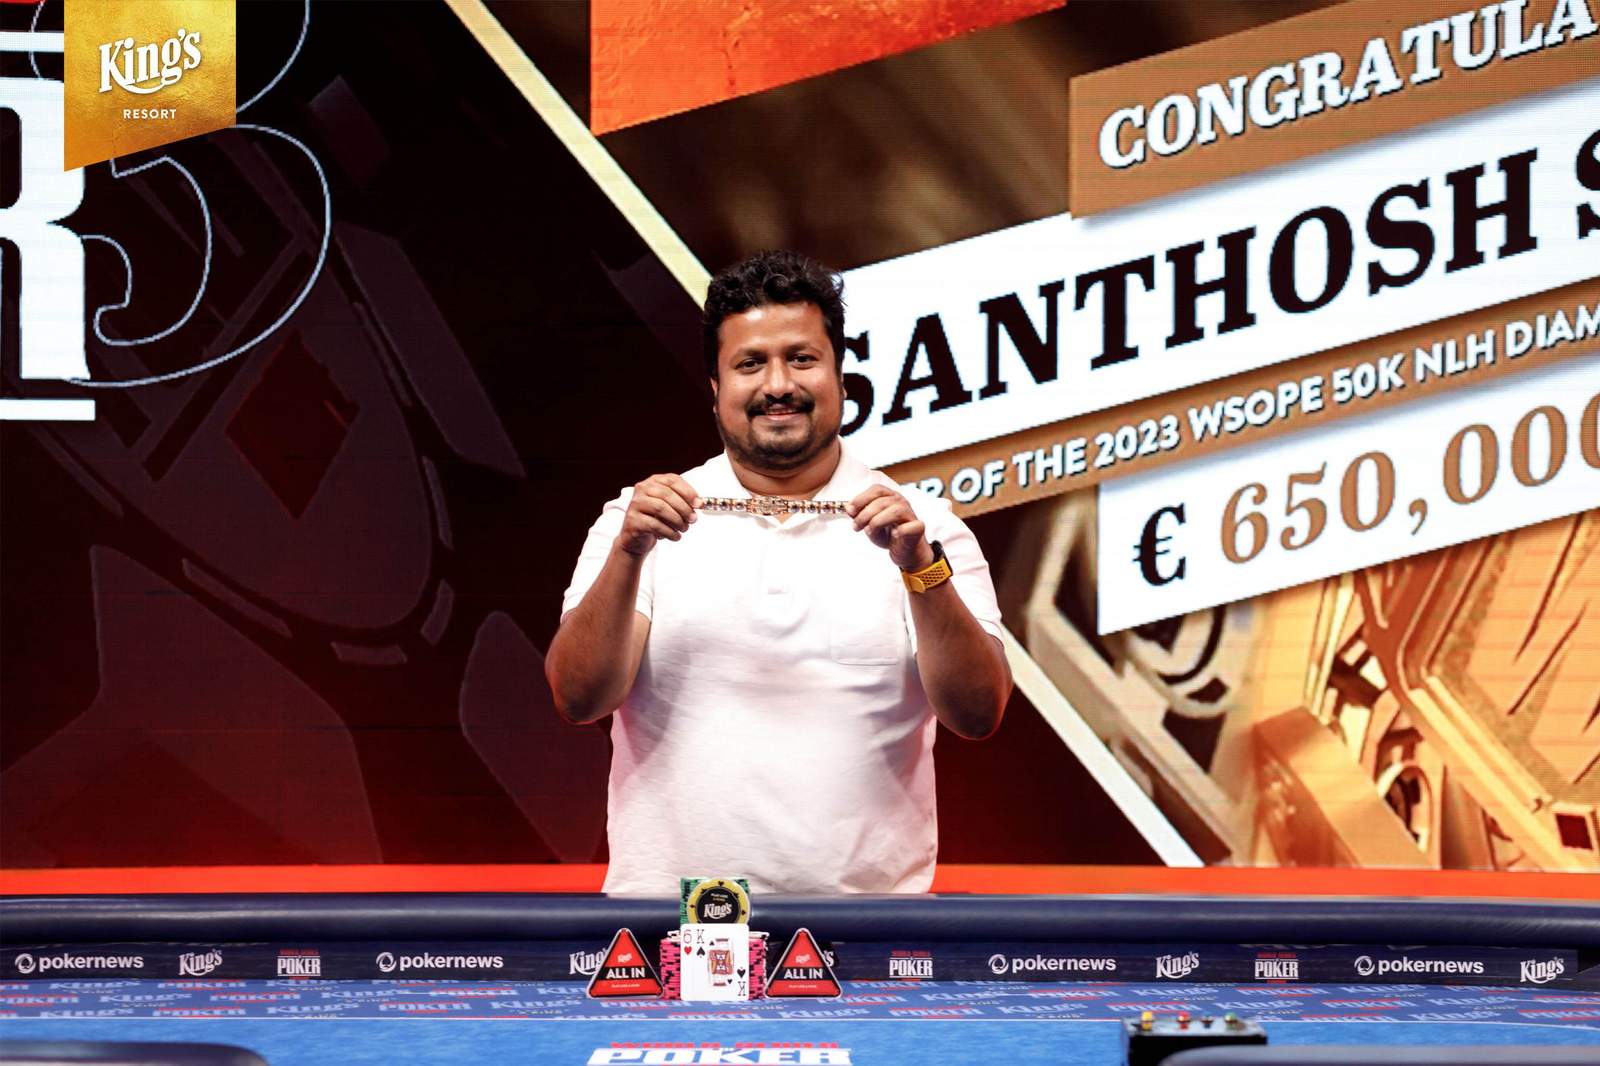 Santhosh Suvarna Wins 1st WSOP Bracelet in €50K Diamond High Roller for €650K